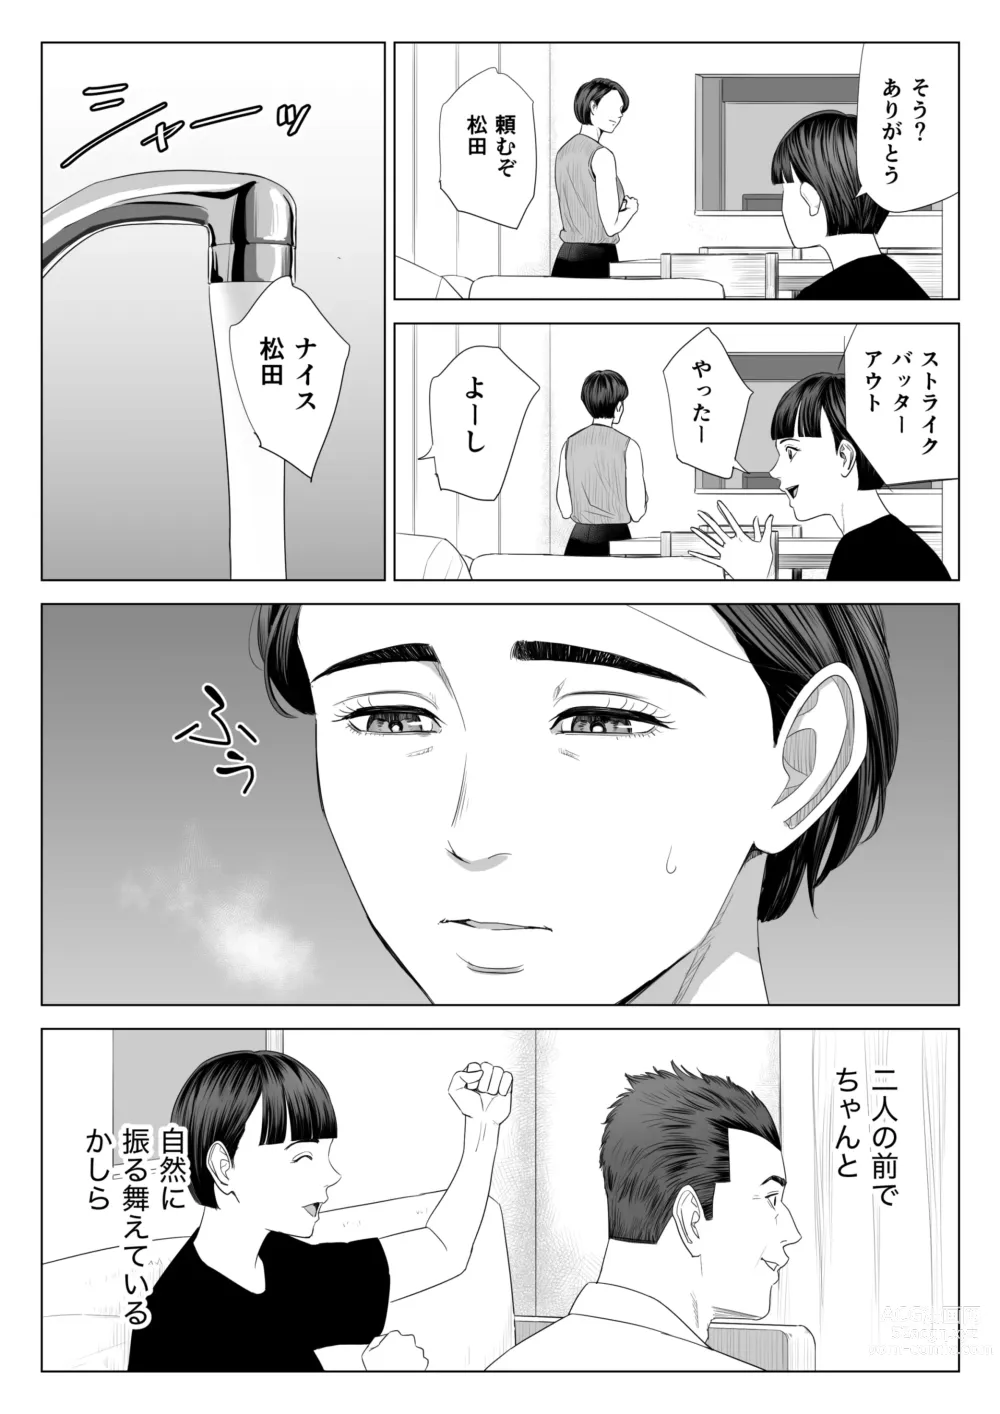 Page 57 of doujinshi Gibo no Tsukaeru Karada.